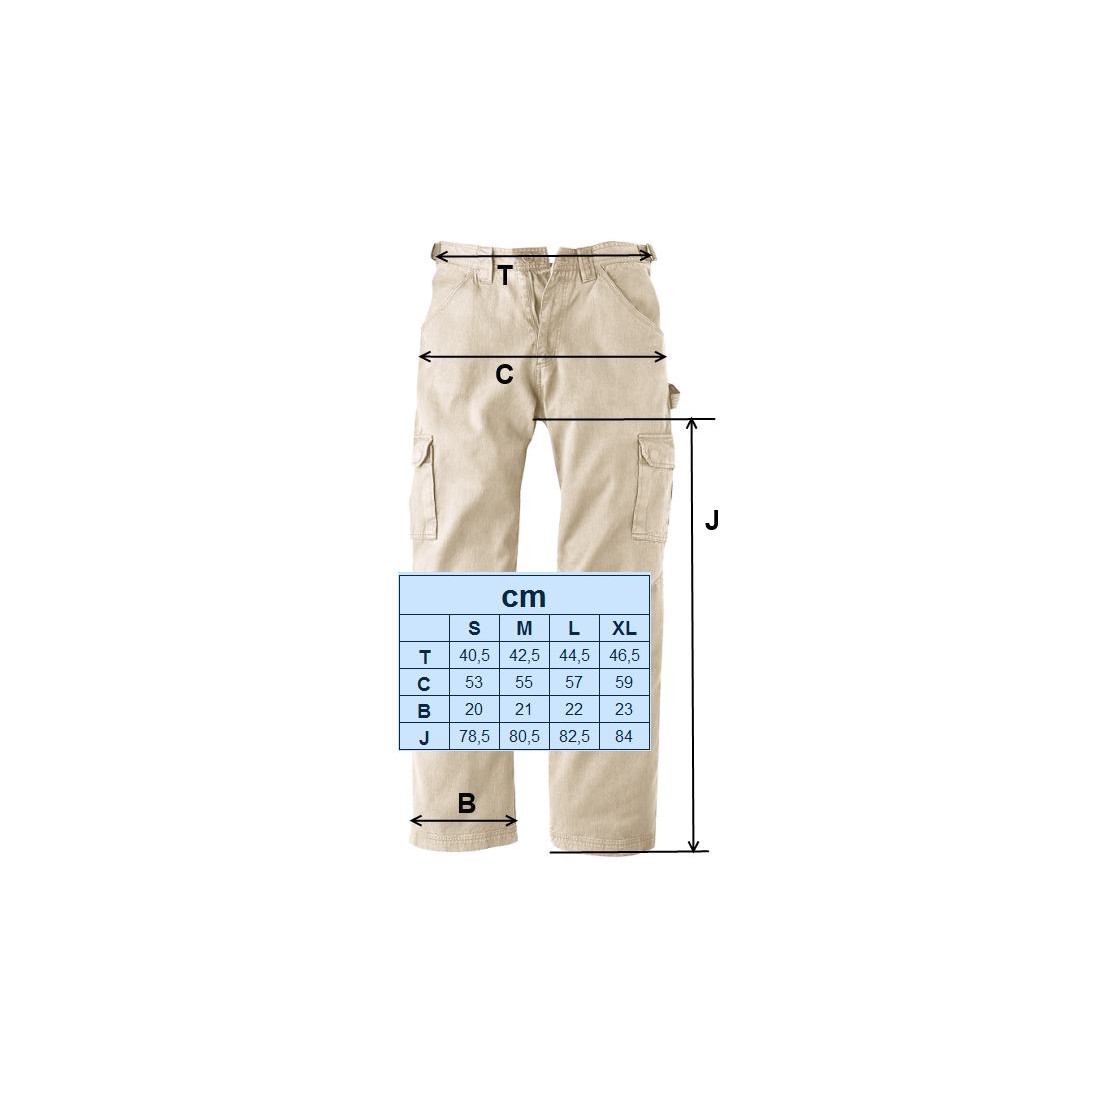 Pantalon sport 100% coton bio (300 g/m2) homme noir, TAILLE XL, GOTS et  VEGAN - Comptoir Biosud